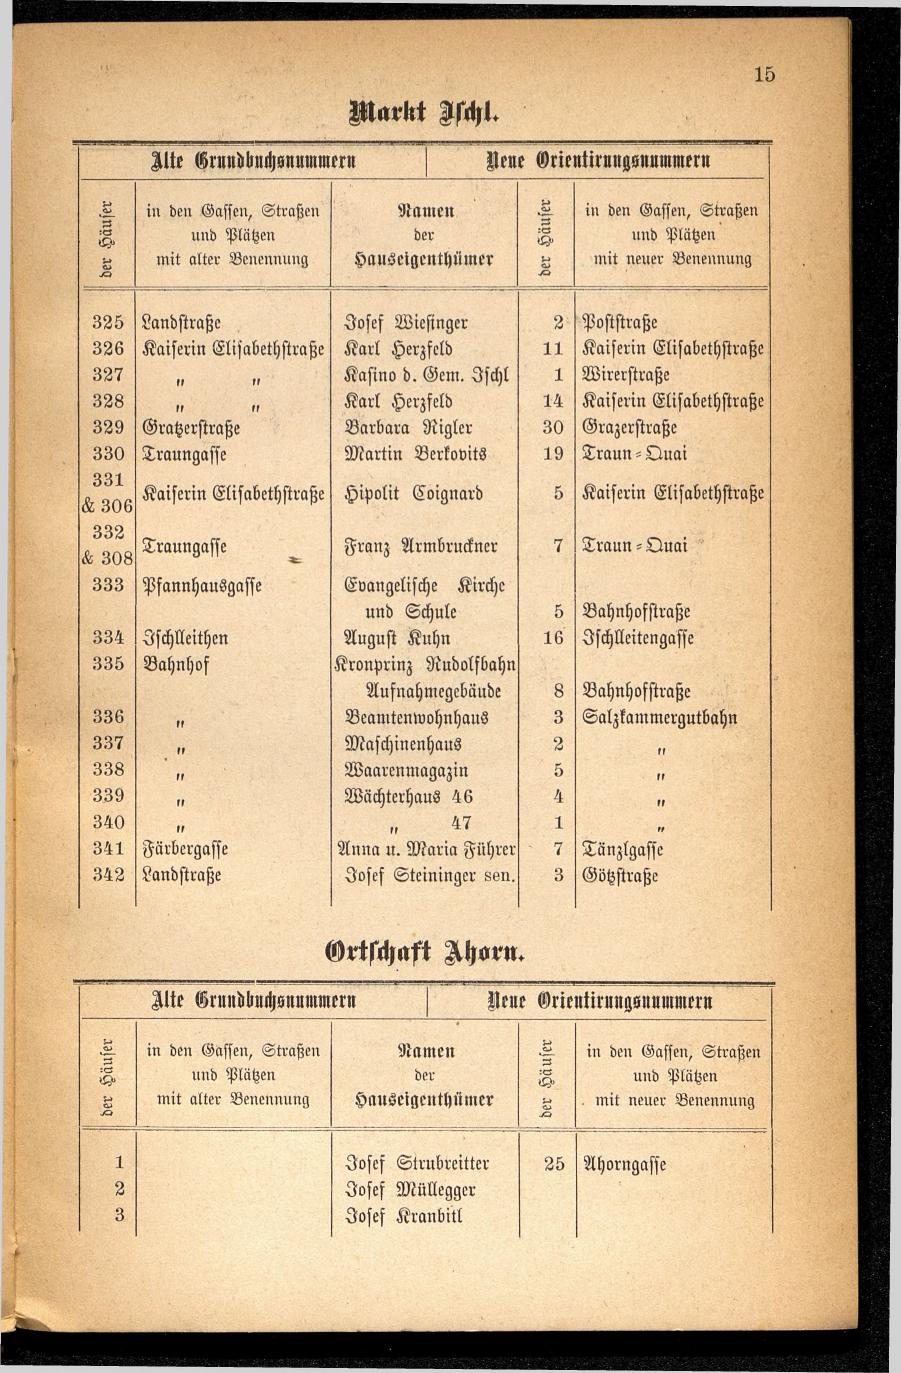 Häuser-Verzeichnis des Marktes und Kurortes Ischl nach den neuen Orientirungsnummern 1881 - Seite 19